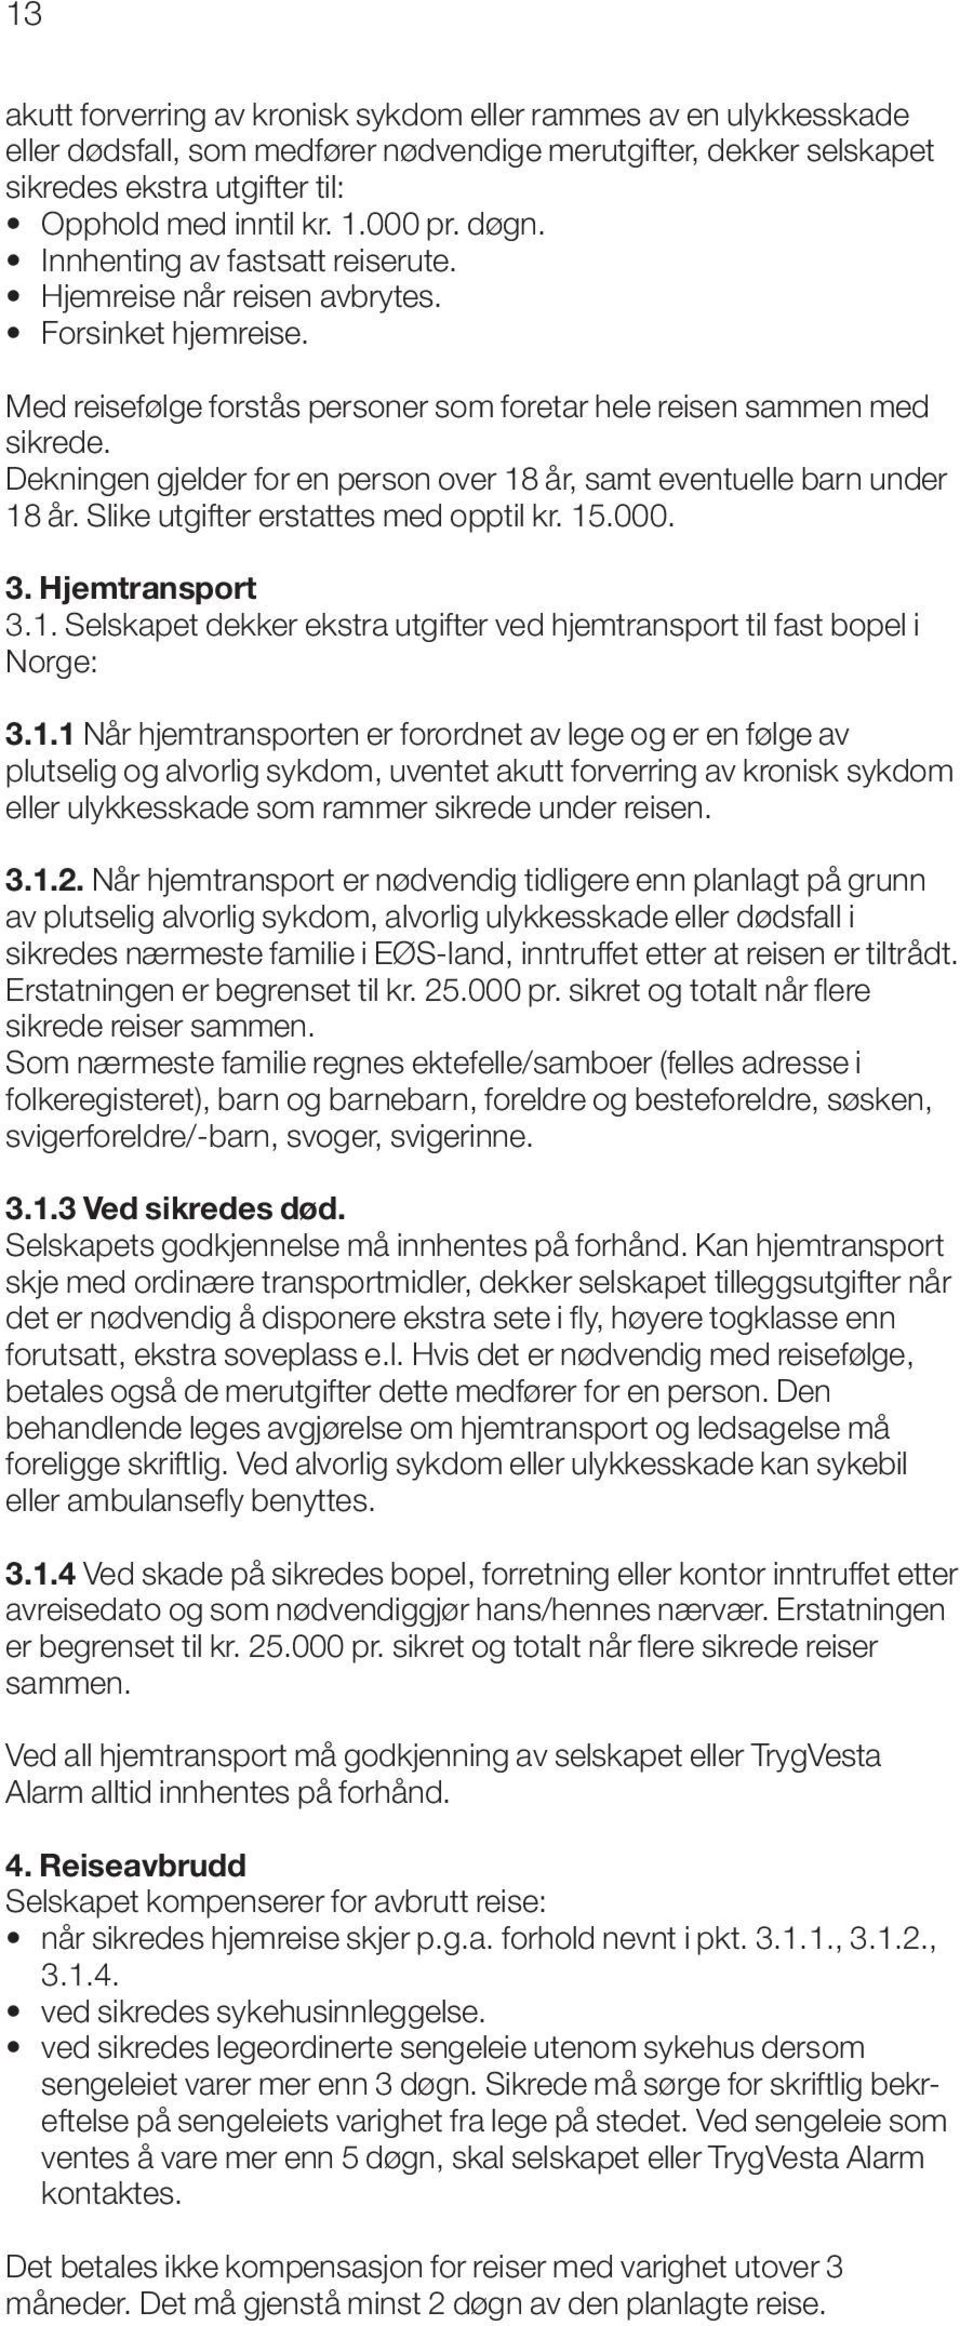 Dekningen gjelder for en person over 18 år, samt eventuelle barn under 18 år. Slike utgifter erstattes med opptil kr. 15.000. 3. Hjemtransport 3.1. Selskapet dekker ekstra utgifter ved hjemtransport til fast bopel i Norge: 3.